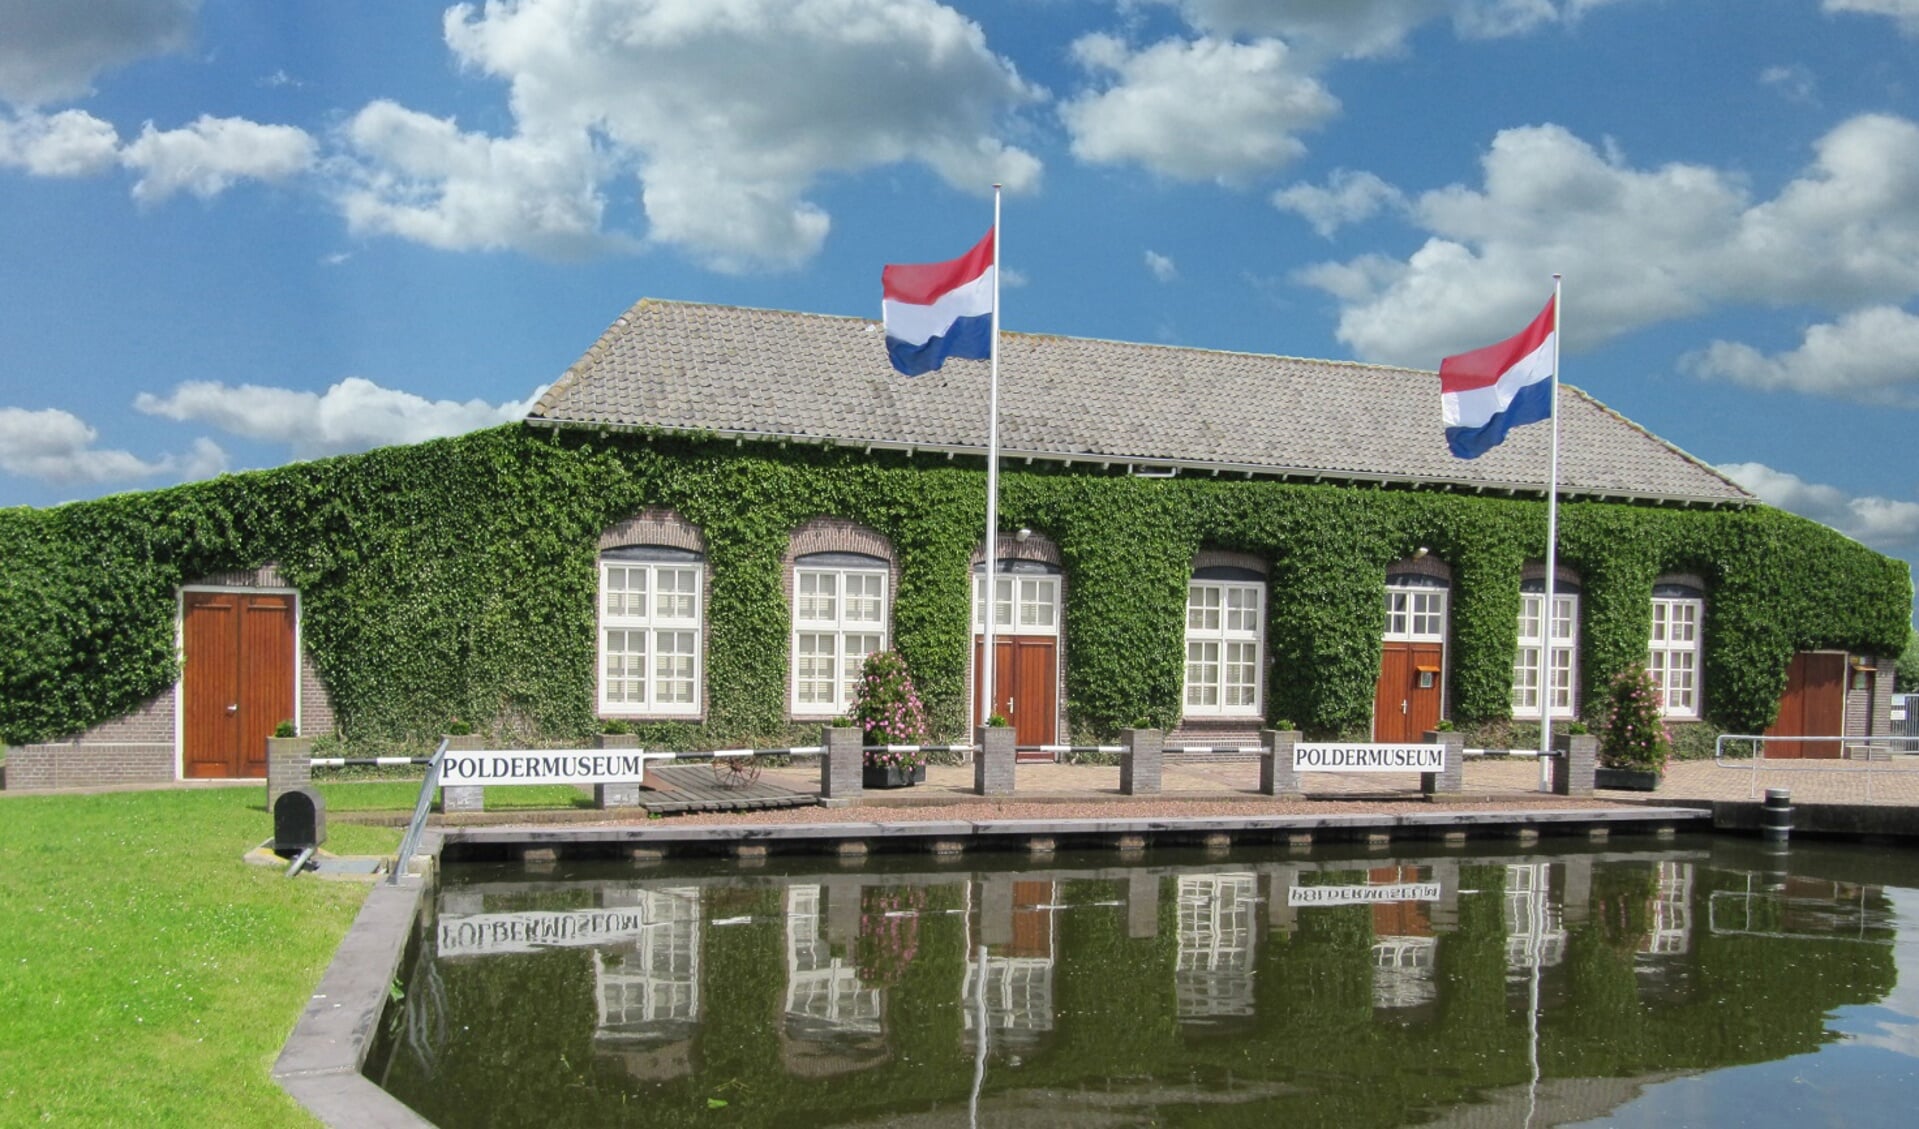 Poldermuseum Het Oude Gemaal aan de Huigendijk in Heerhugowaard.